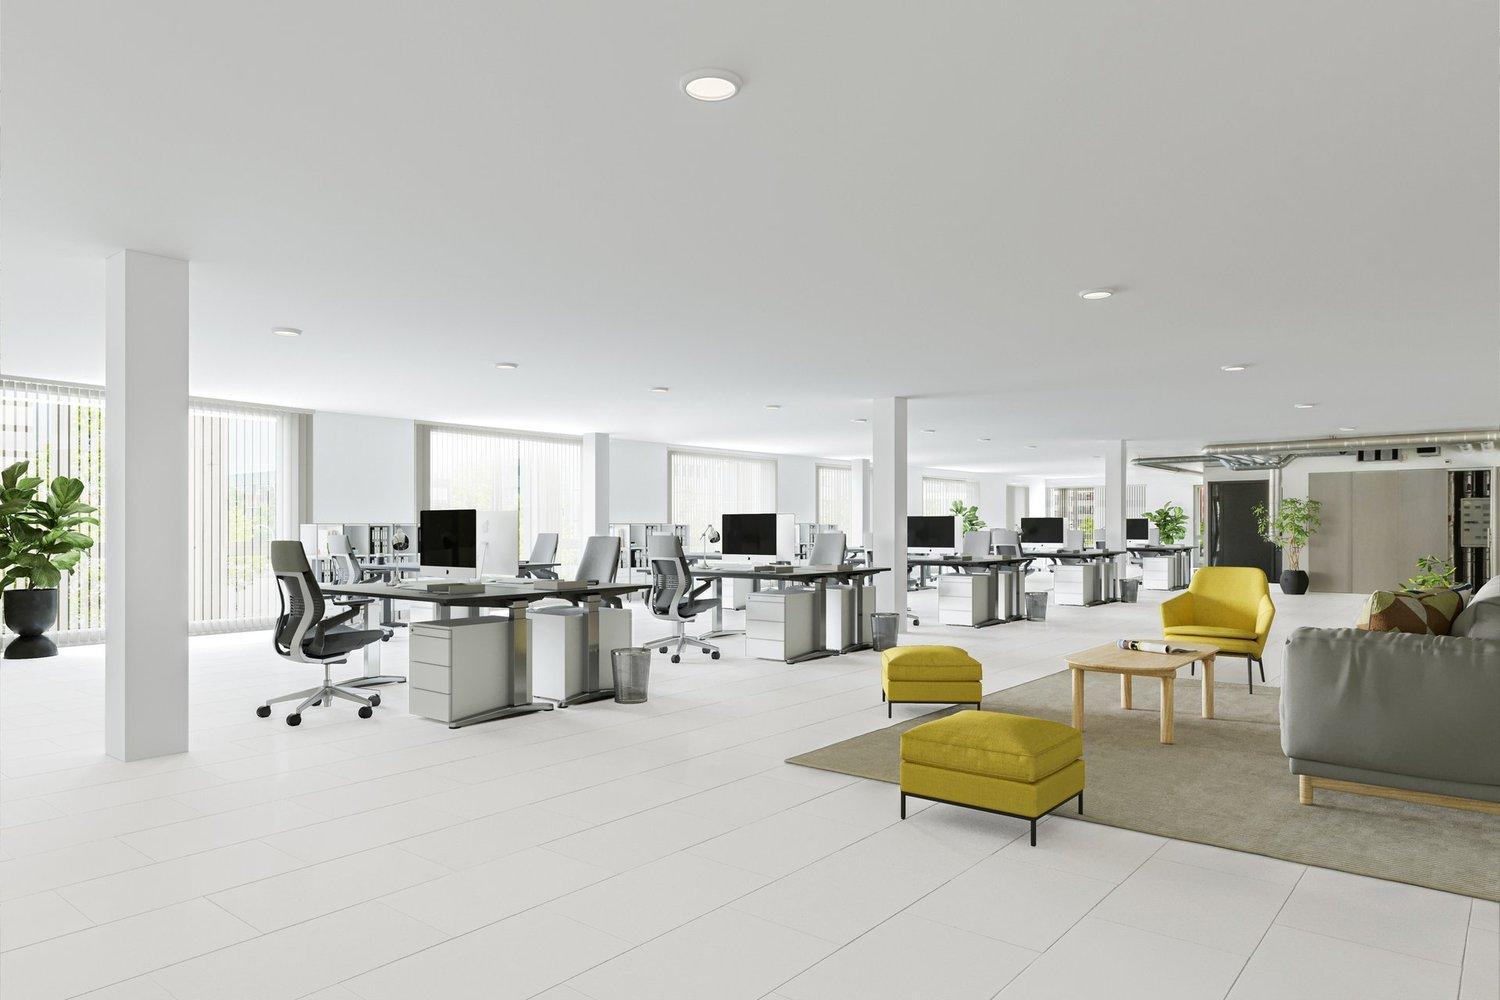 8500 m² grosse Bürofläche an erster Lage